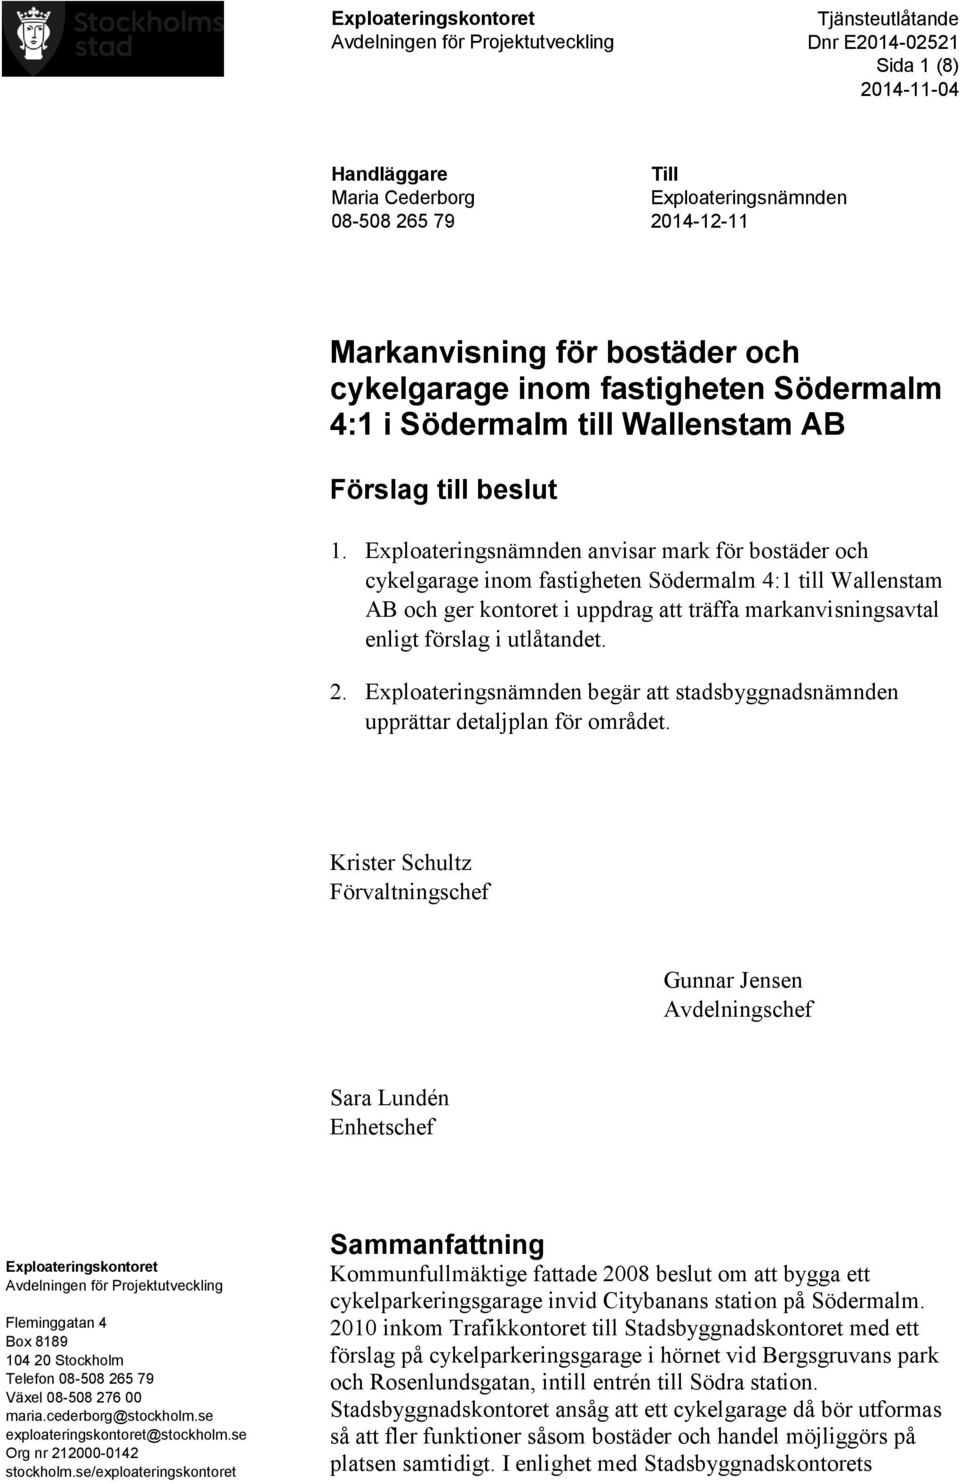 Exploateringsnämnden anvisar mark för bostäder och cykelgarage inom fastigheten Södermalm 4:1 till Wallenstam AB och ger kontoret i uppdrag att träffa markanvisningsavtal enligt förslag i utlåtandet.